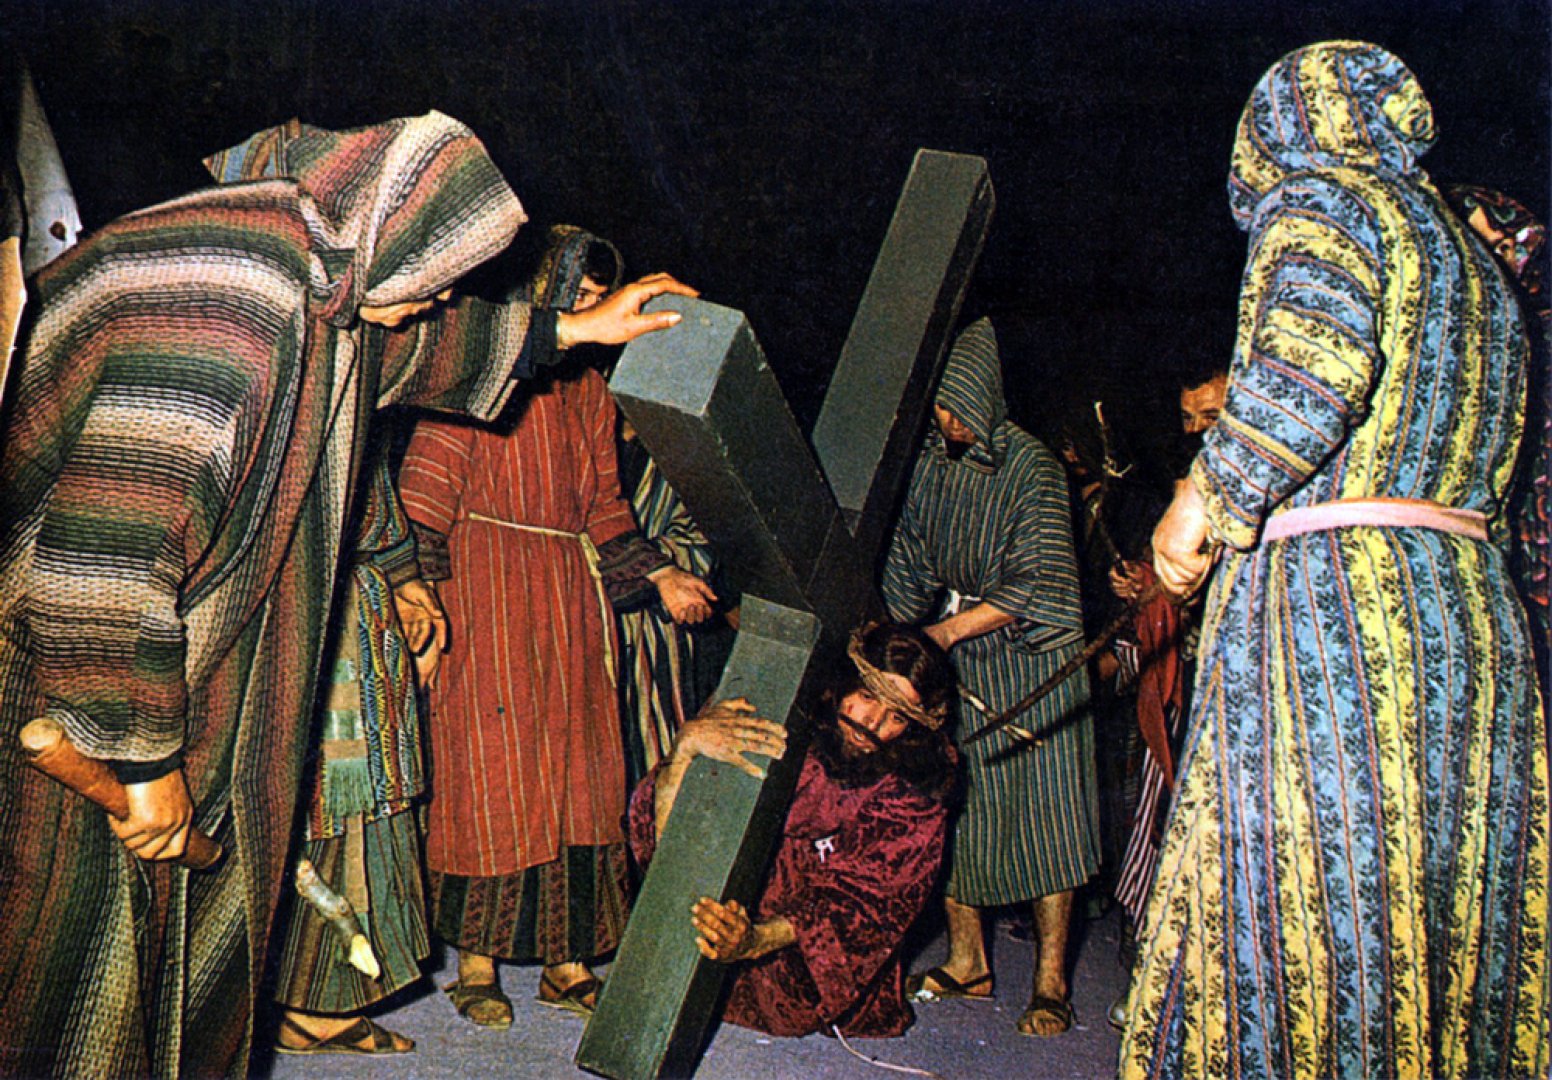 Jueus increpant a Jesus en una caiguda